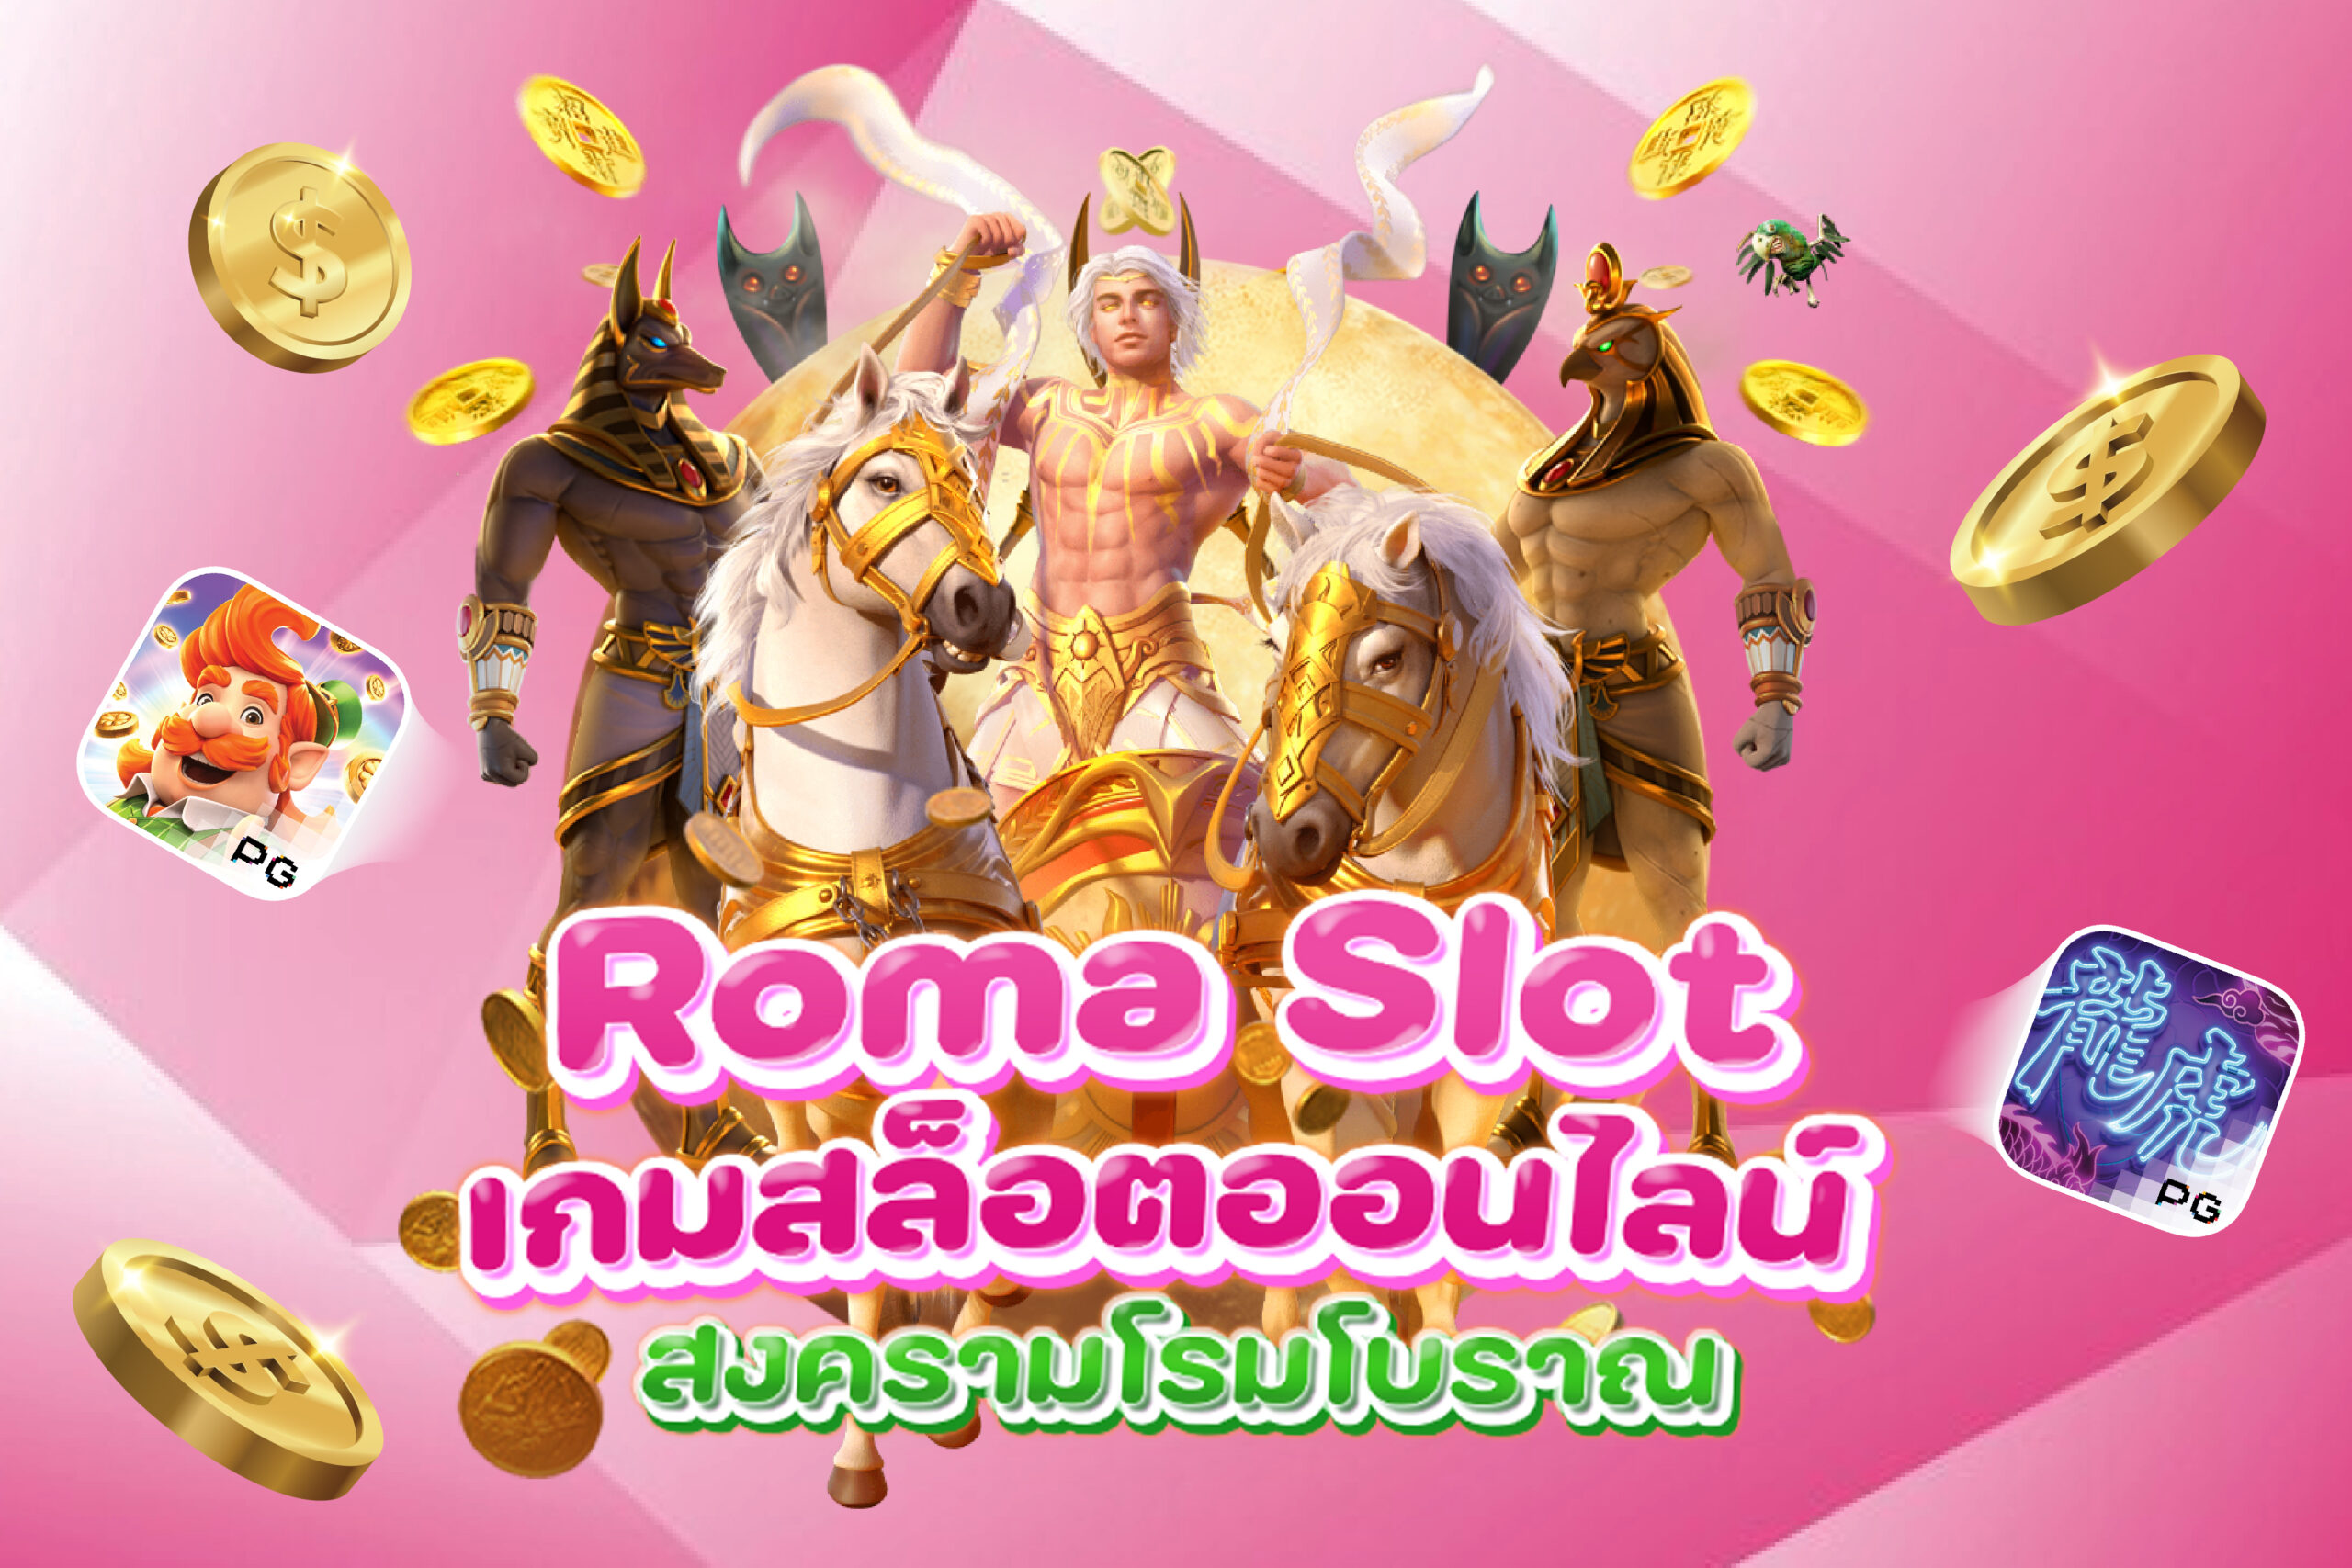 Roma Slot-เกมสล็อตออนไลน์สงครามโรมโบราณ